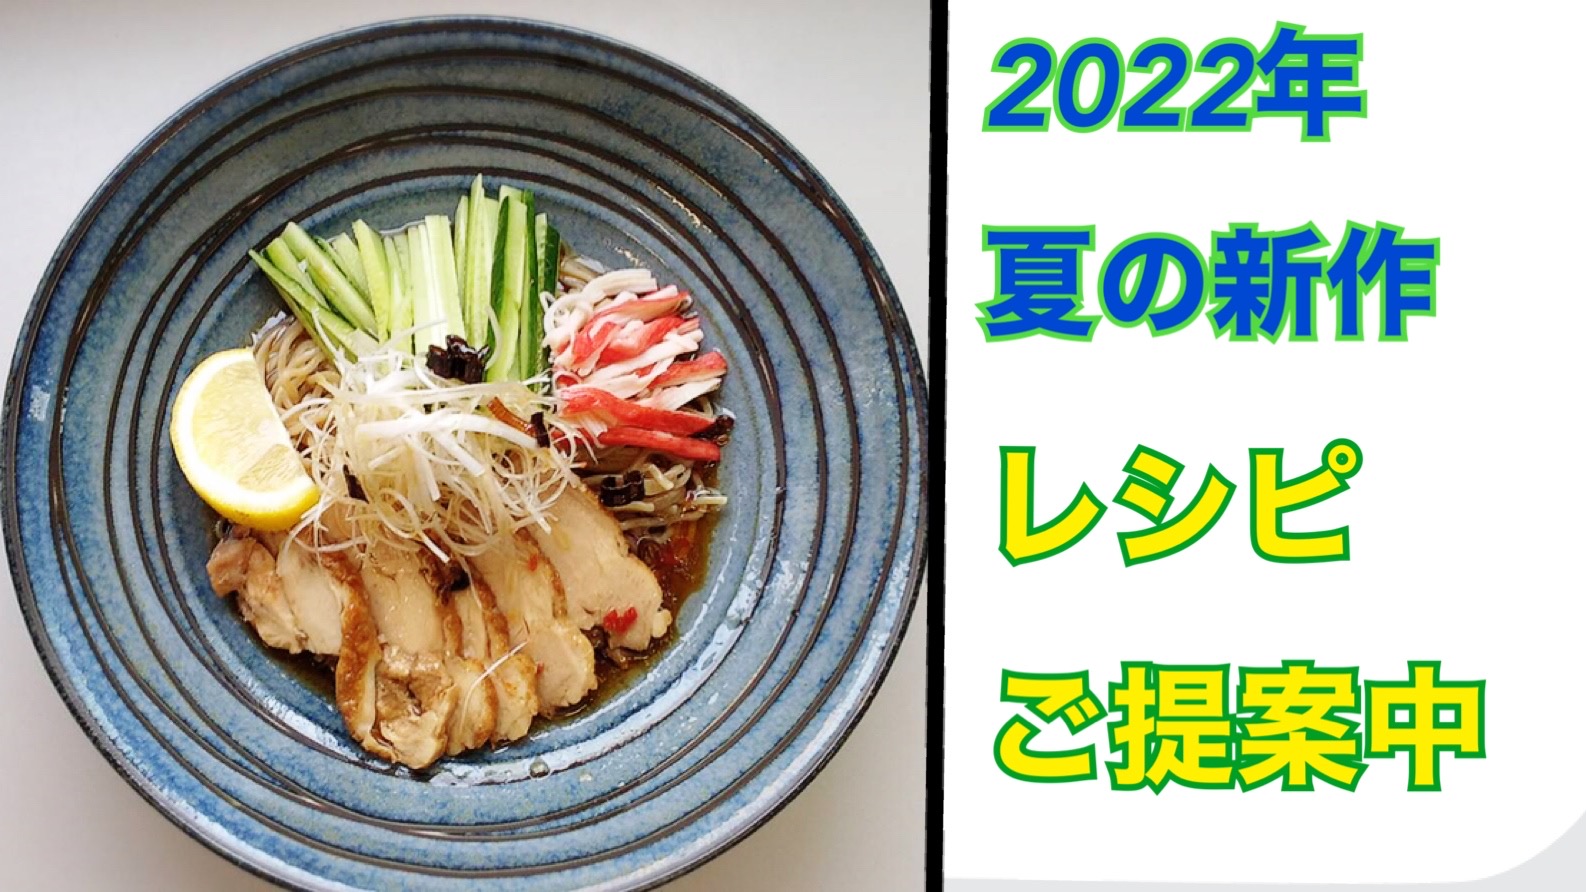 “麺”夢塾番外編！ 夏季商戦向けの新メニューをご提案中。新作麺は6月6日より出荷開始予定。